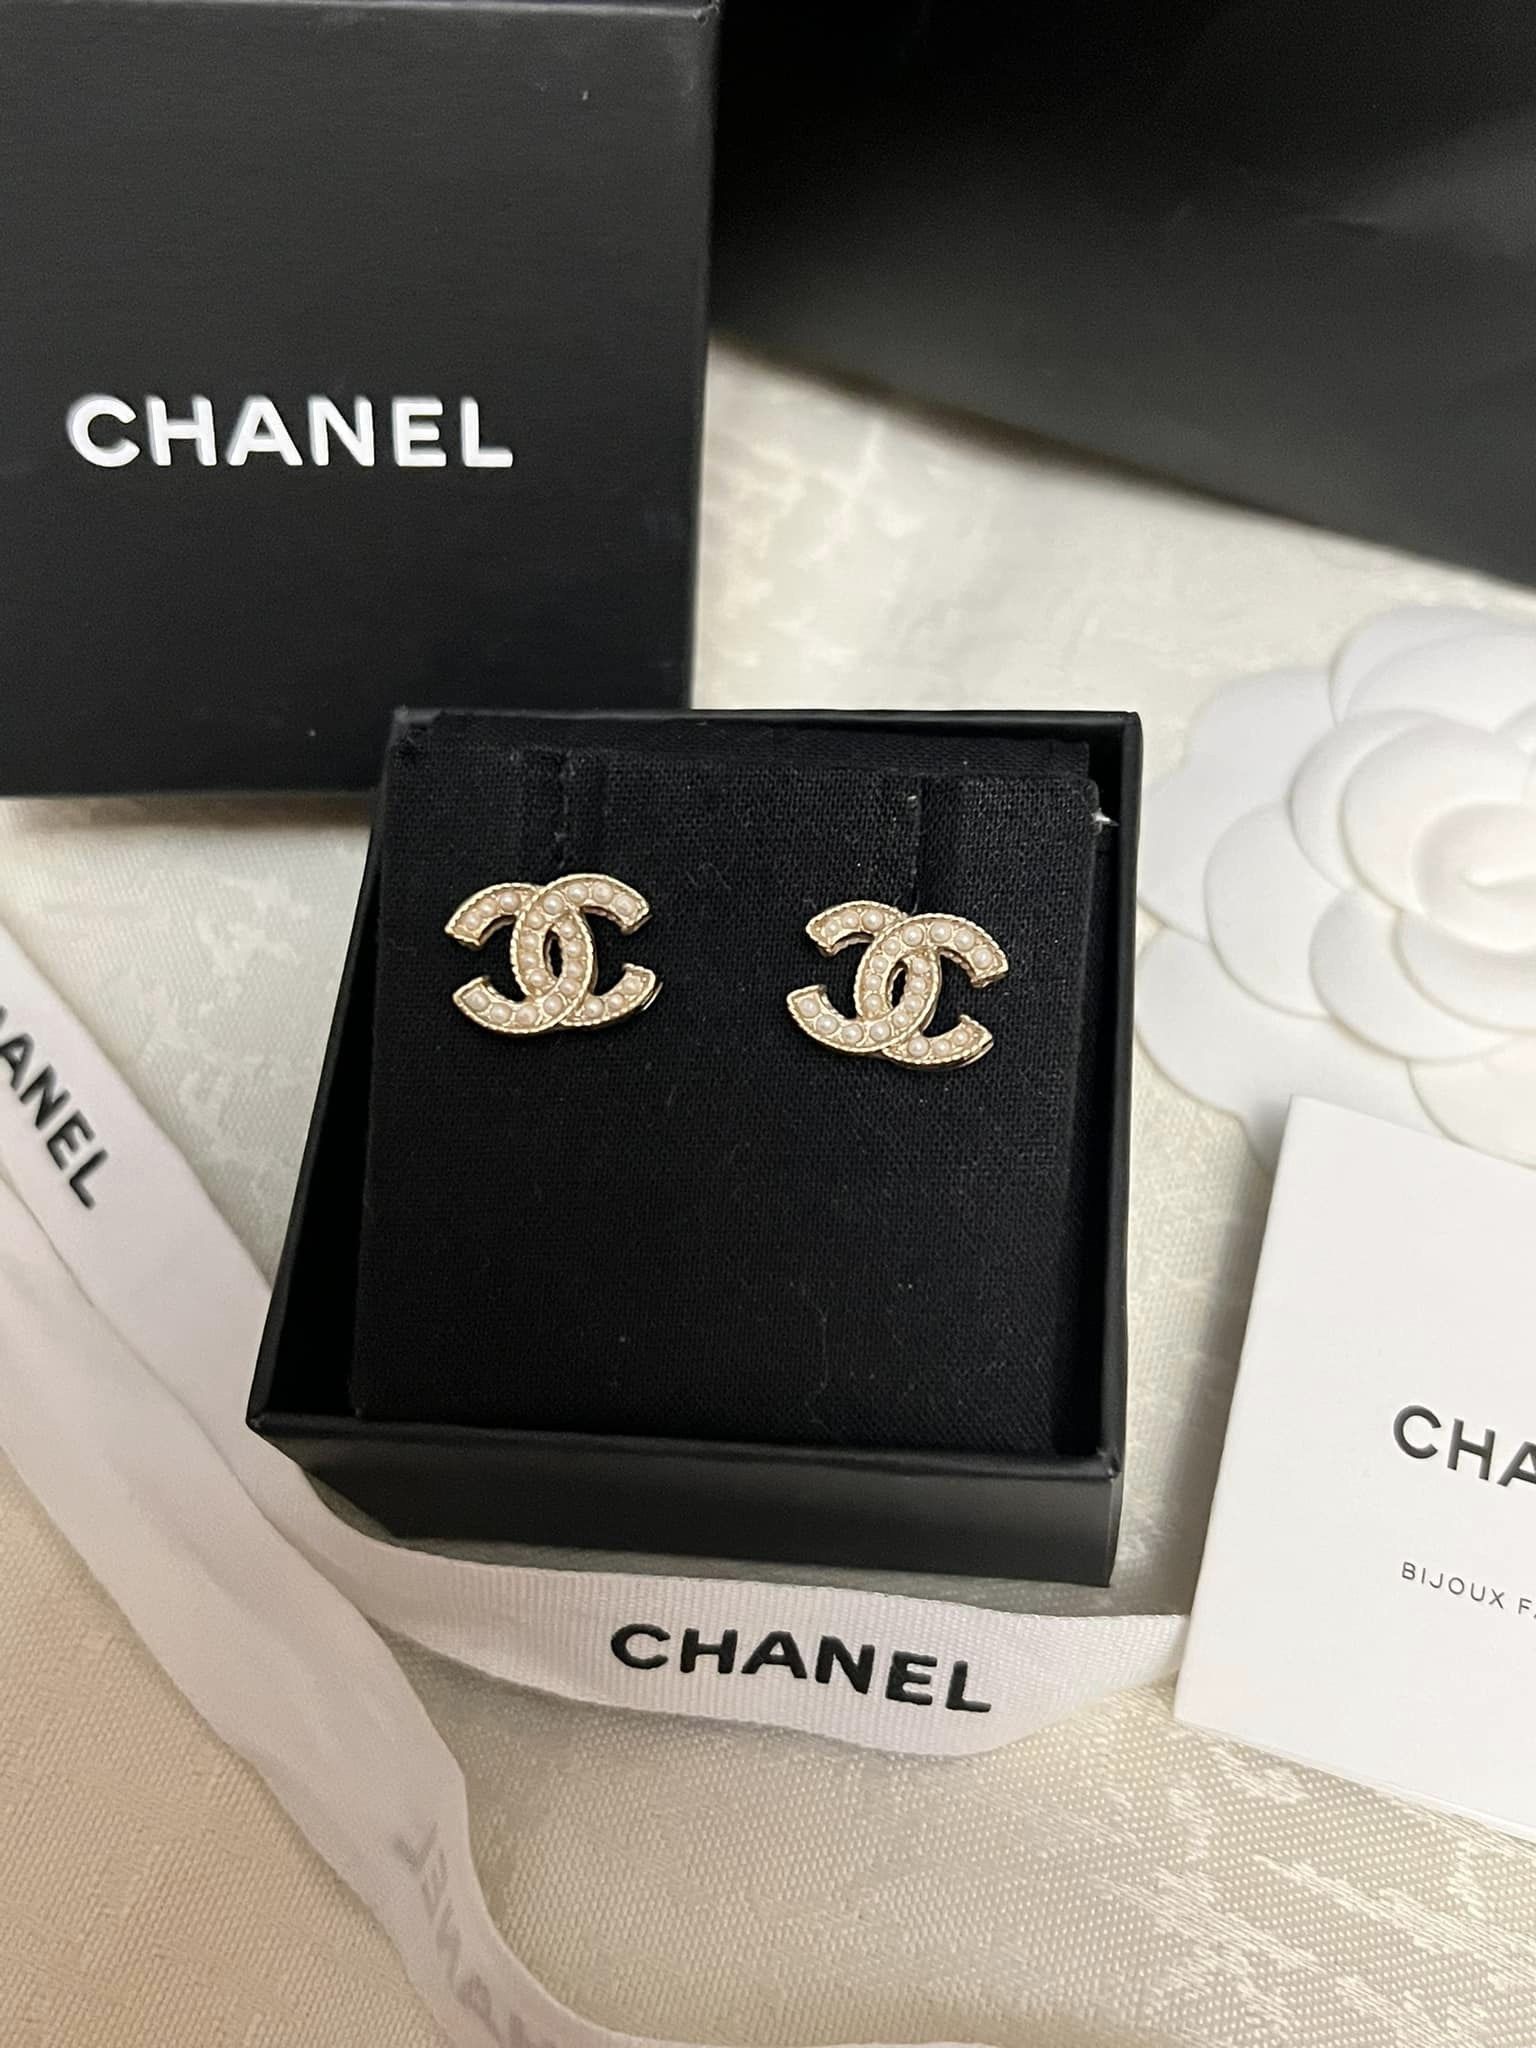 Oryginalne kolczyki Chanel CC złoto  Warszawa  Kup teraz na Allegro  Lokalnie